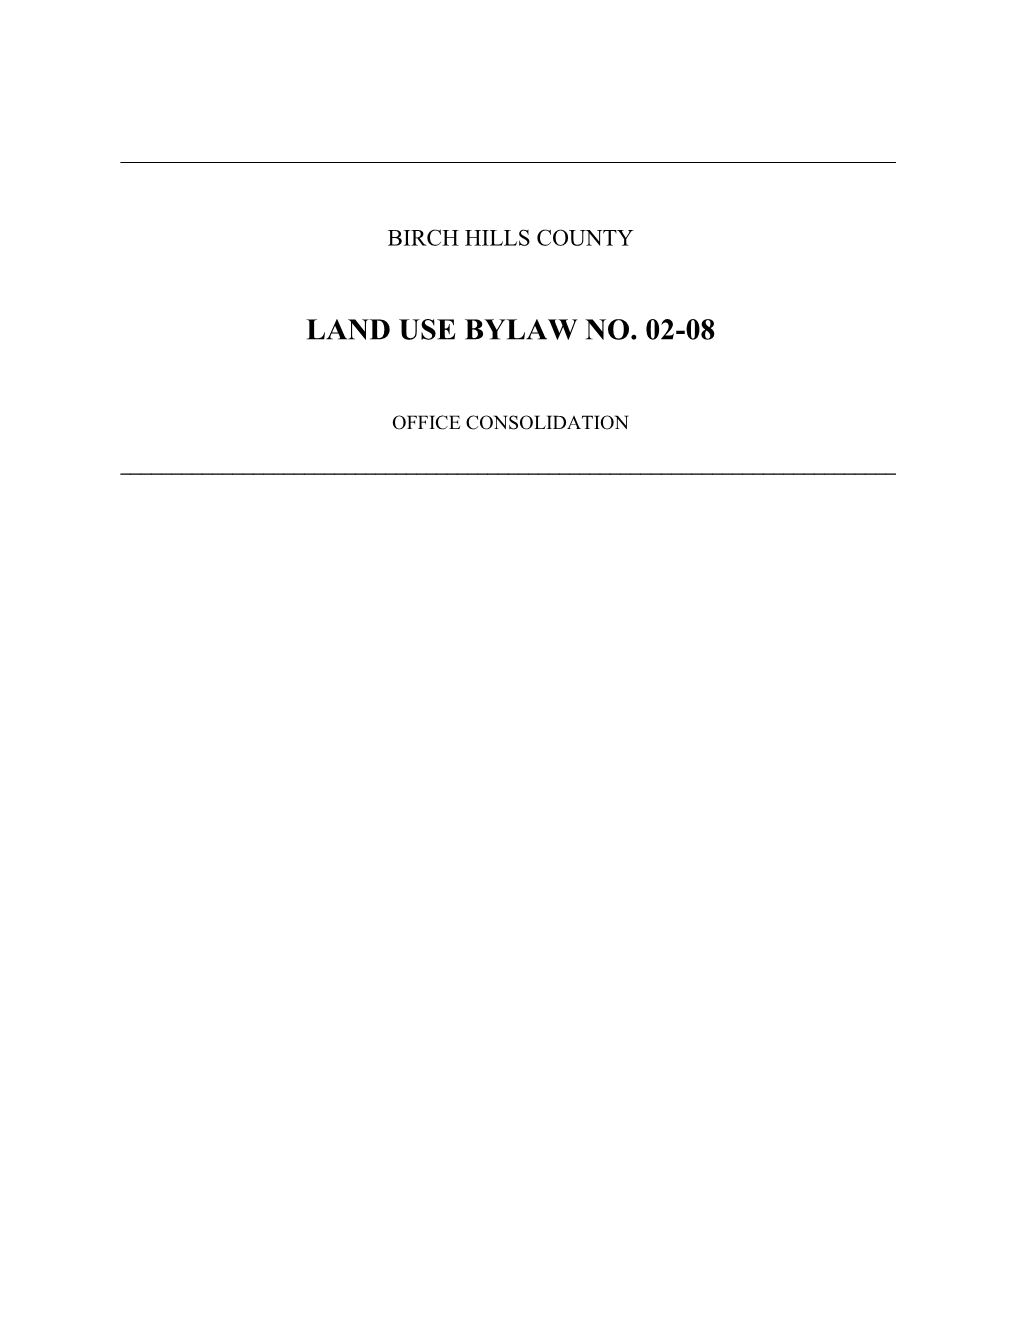 Land Use Bylaw No. 02-08